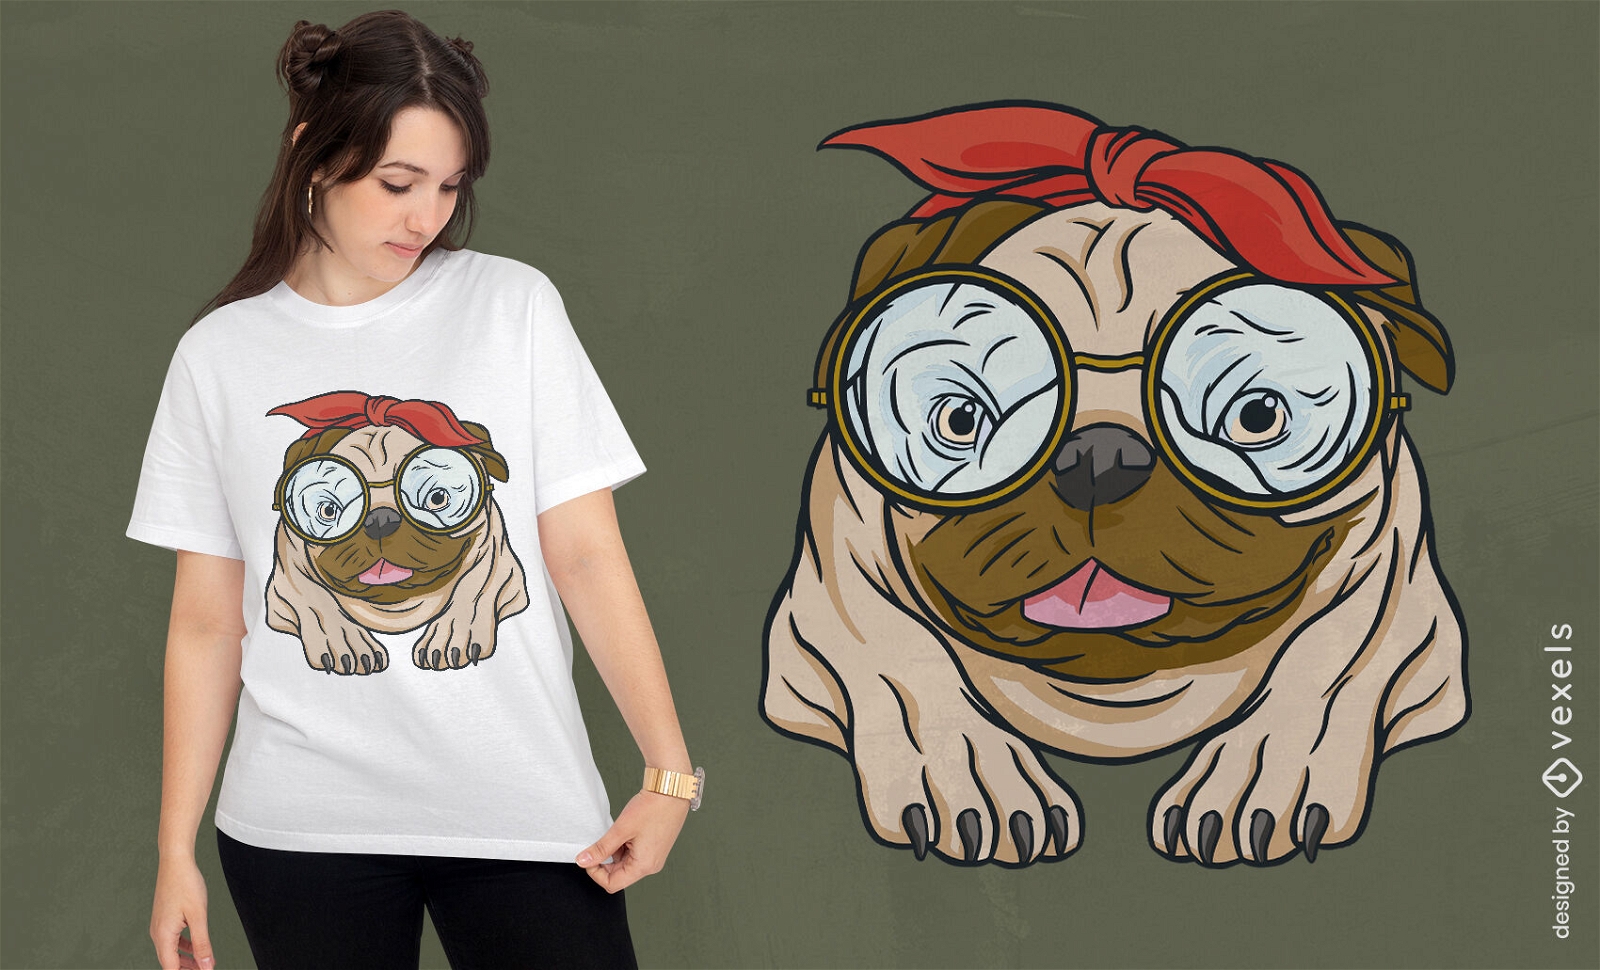 Pug dog with glasses and bandanna t-shirt design